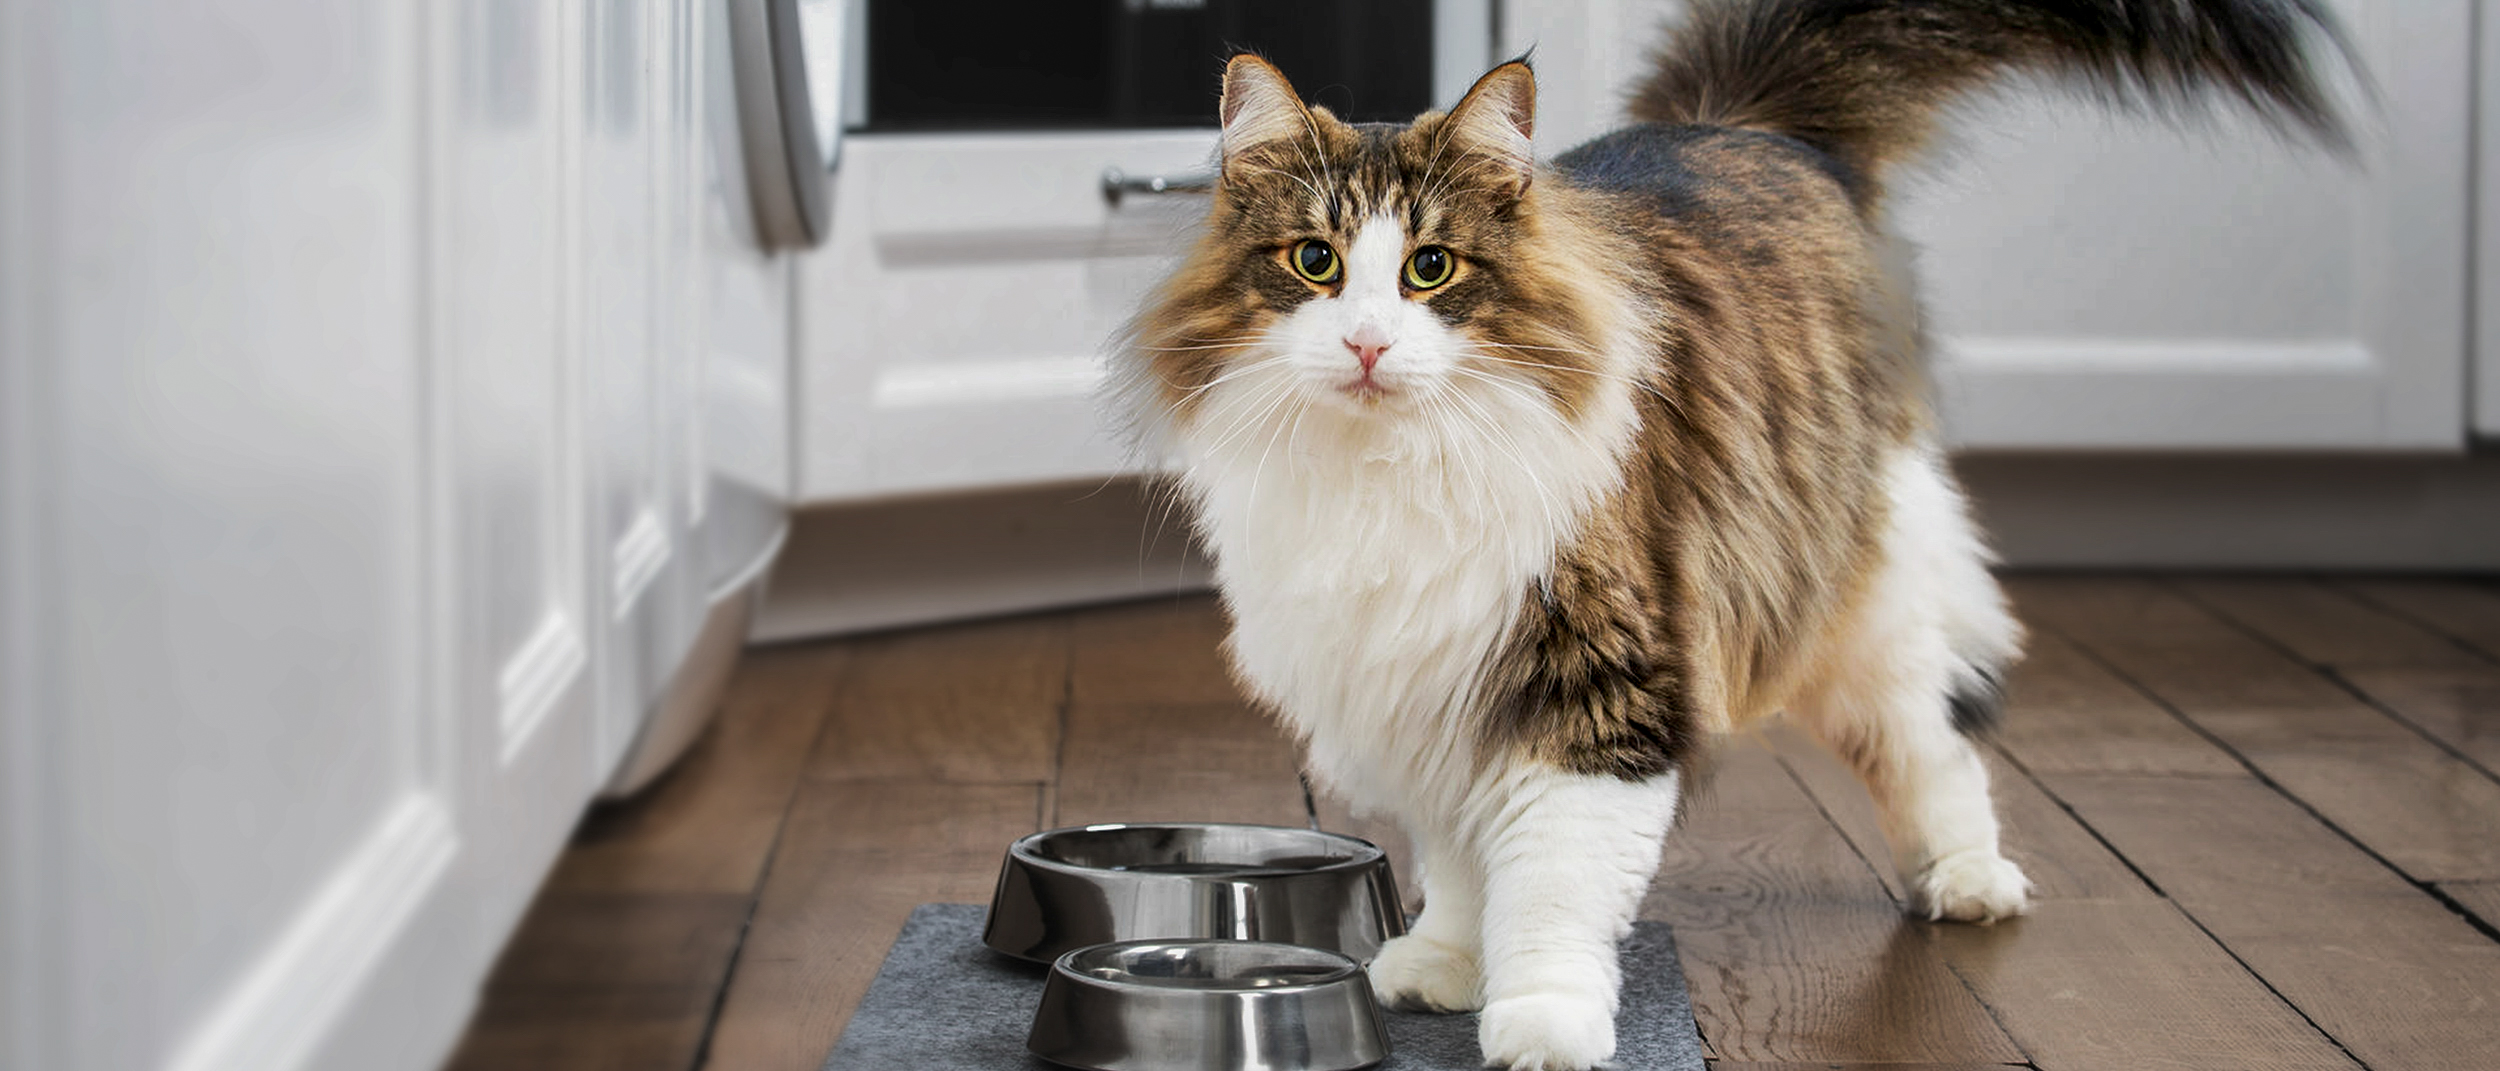 Gato Bosque de Noruega adulto de pie en una cocina junto a dos cuencos de plata.